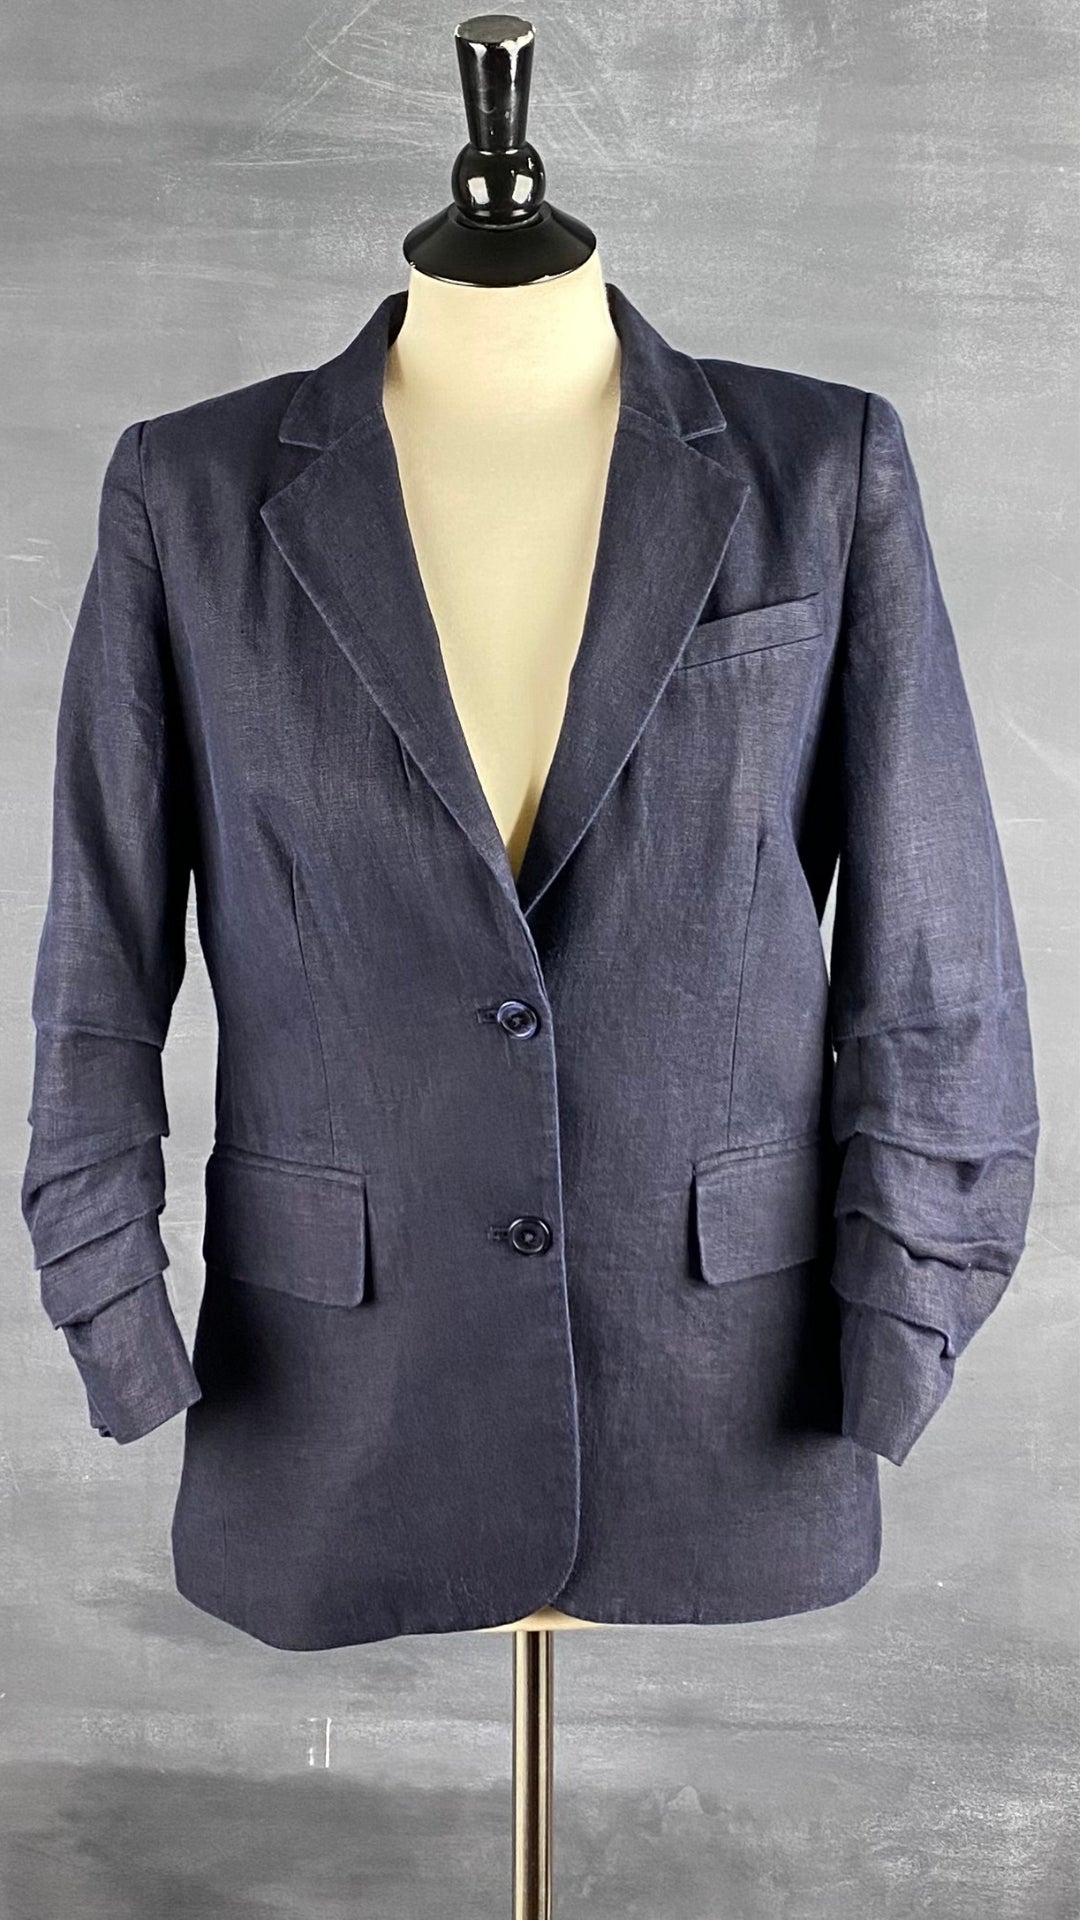 Veston estival parfait, ce blazer marine en lin Michael Kors est une base pour les températures chaudes. Vue de face.